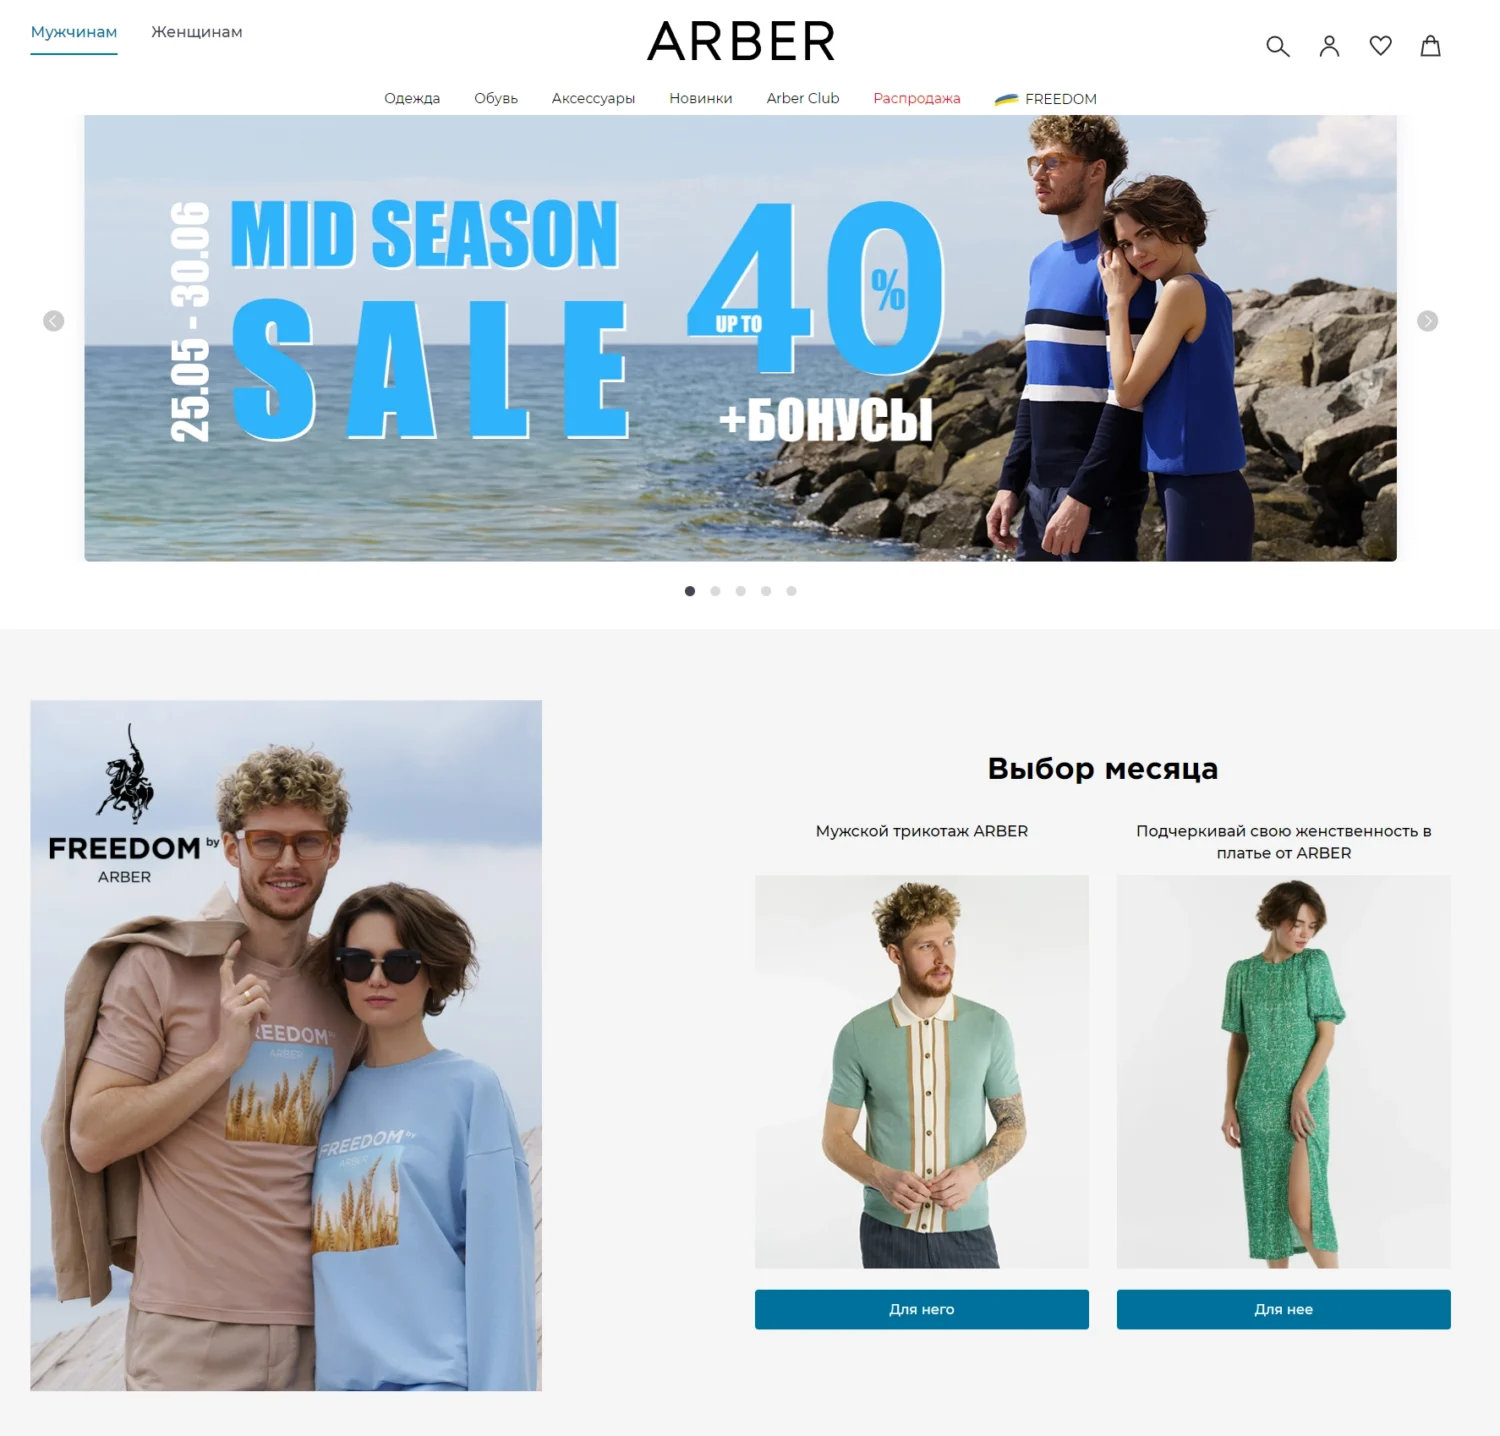 ARBER _ Интернет-магазин одежды